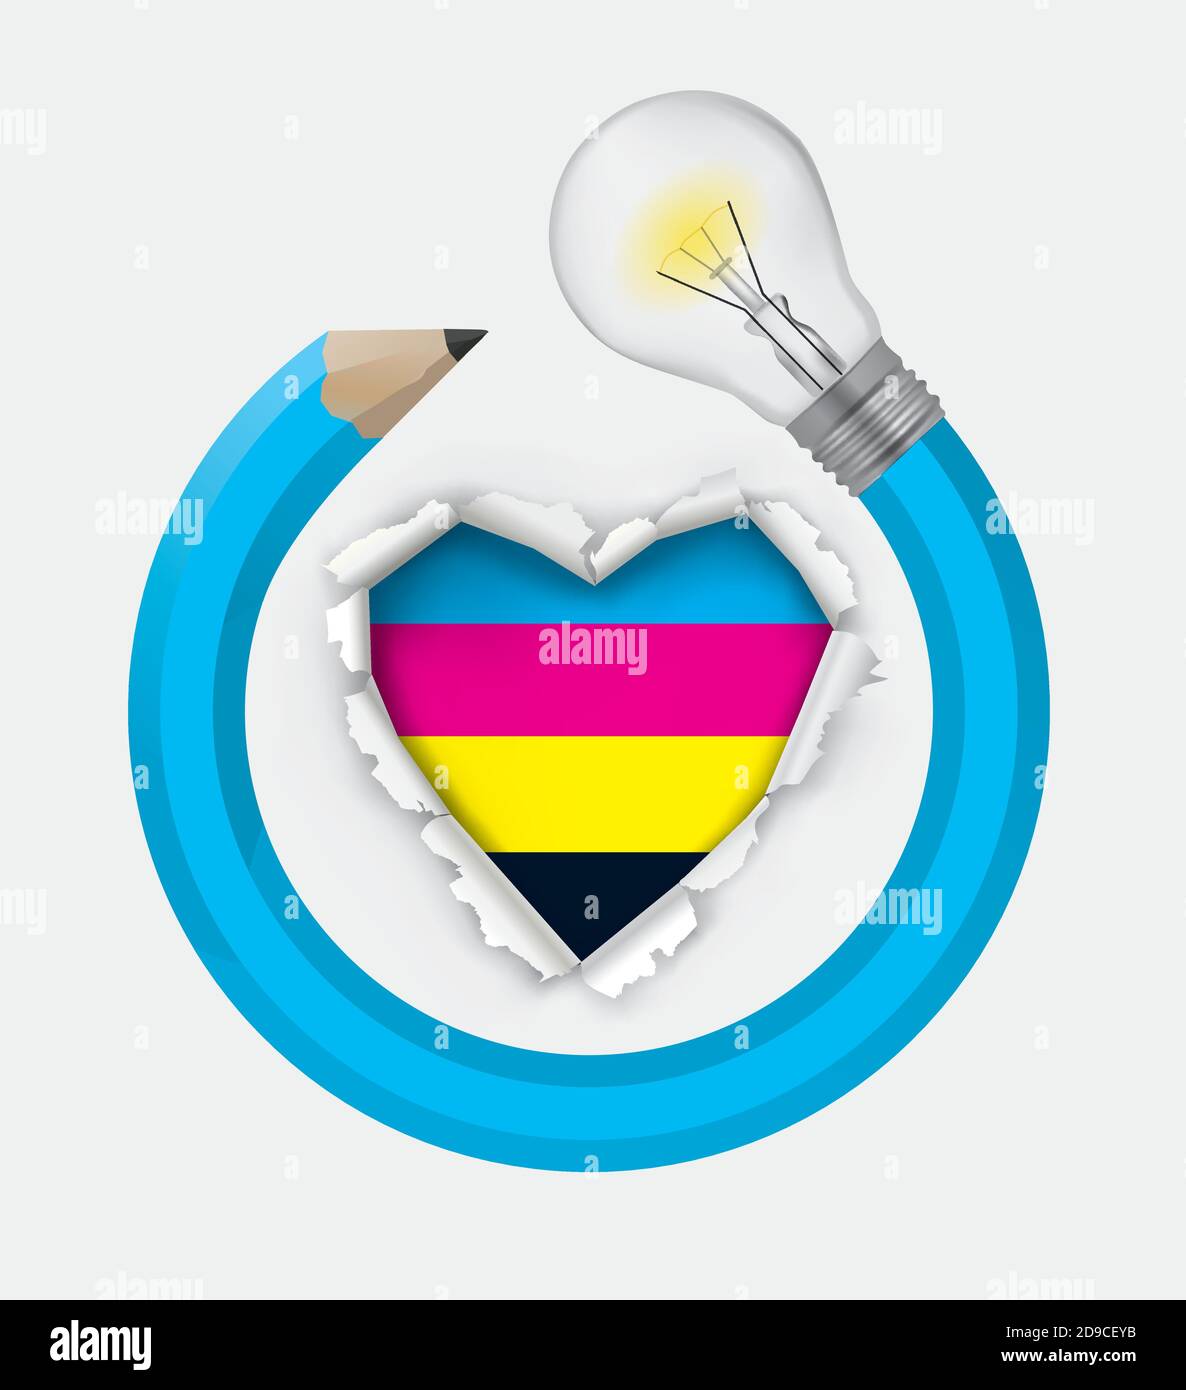 Grafica, passione e creatività. Illustrazione del cuore di carta strappata con i colori cmyk e la matita creativa con la lampadina. Vettore disponibile. Illustrazione Vettoriale